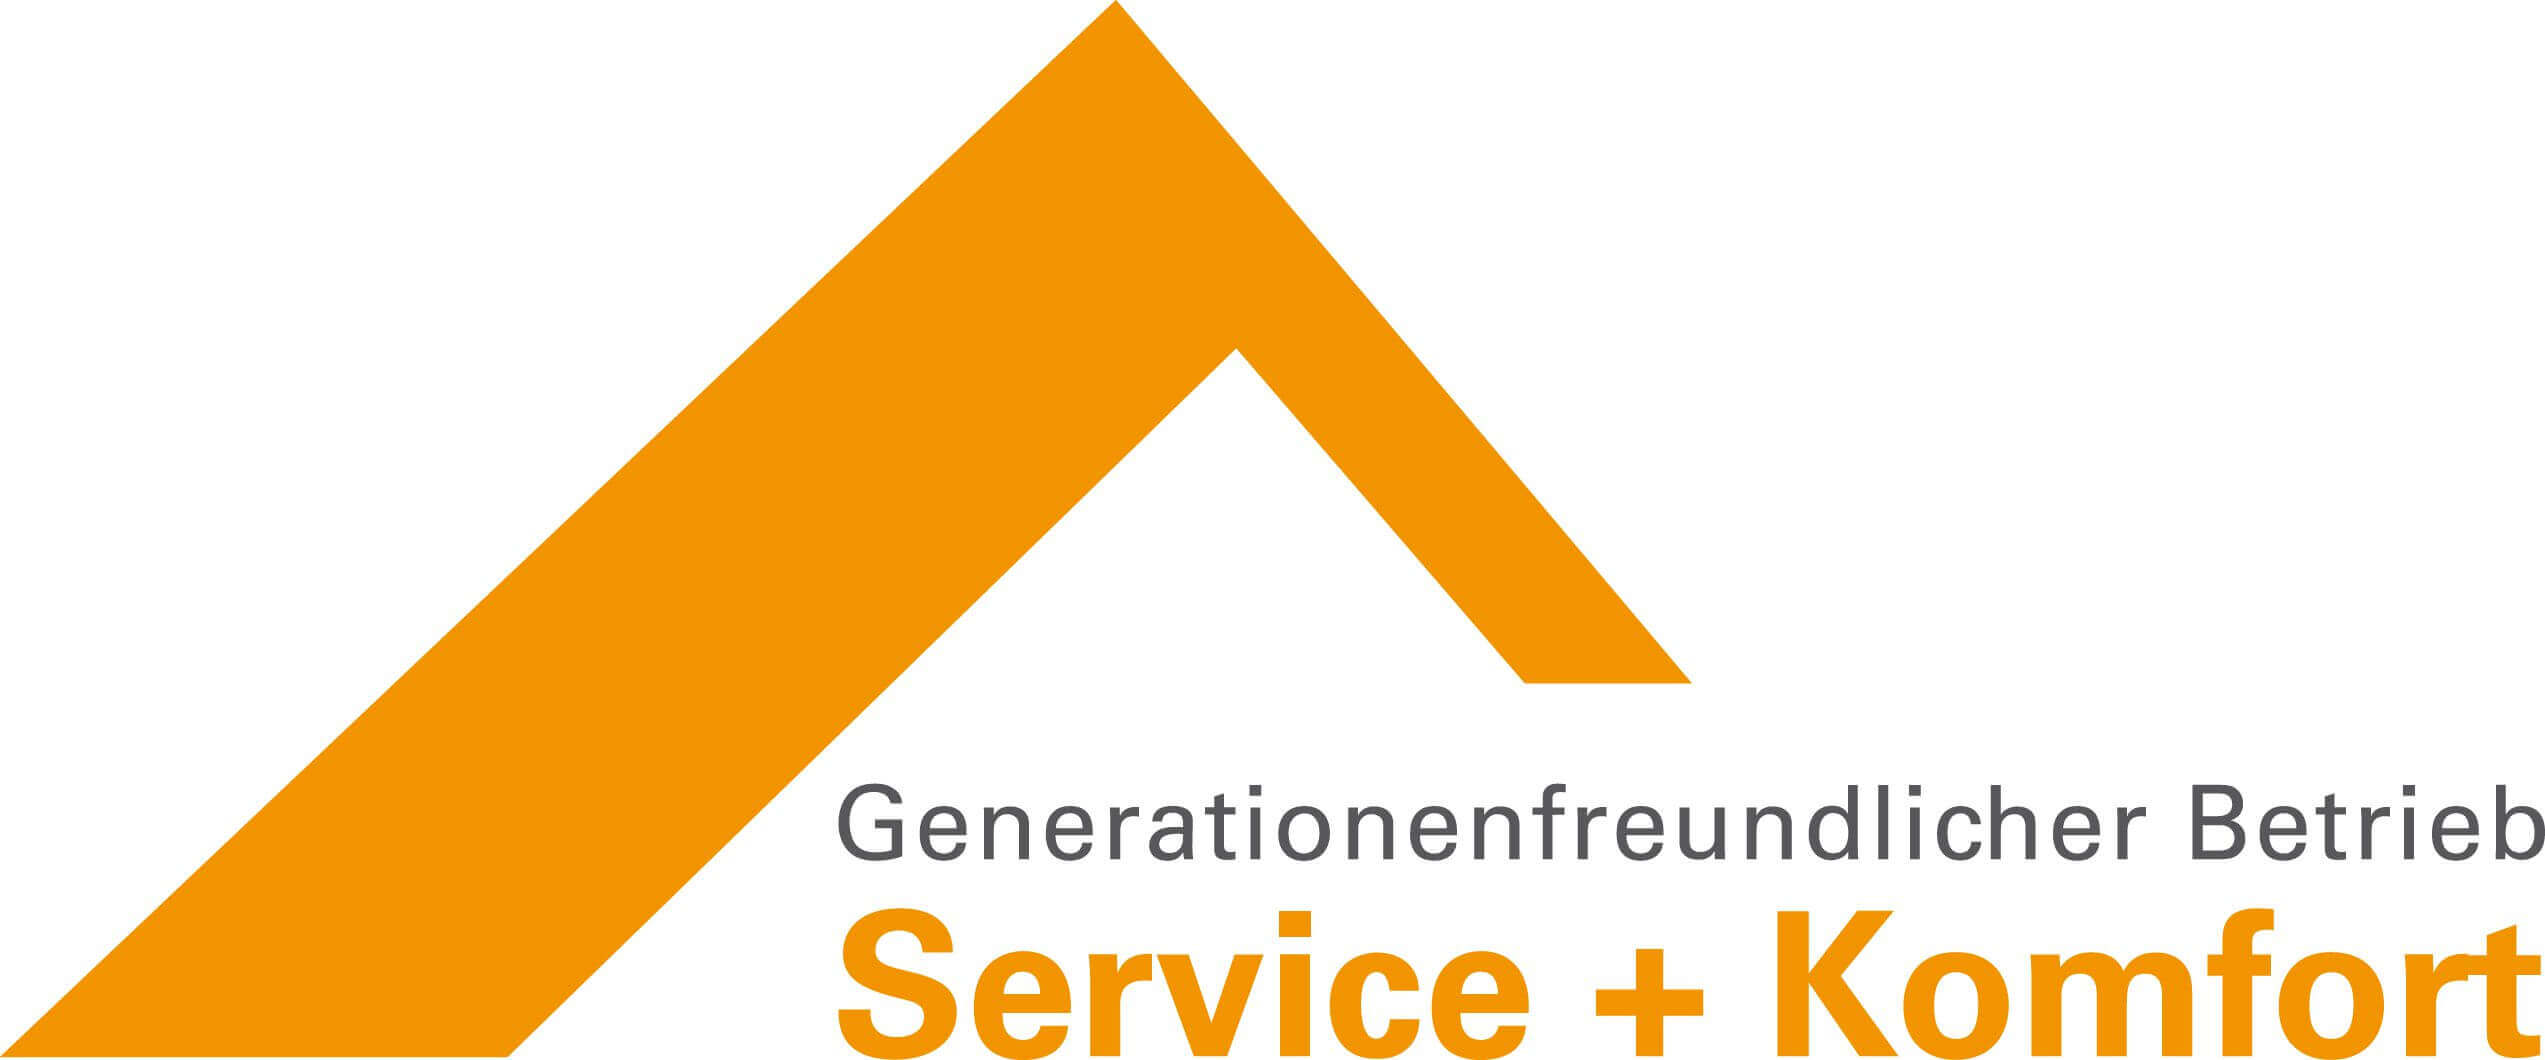 Das Logo Generationenfreundlicherbetrieb